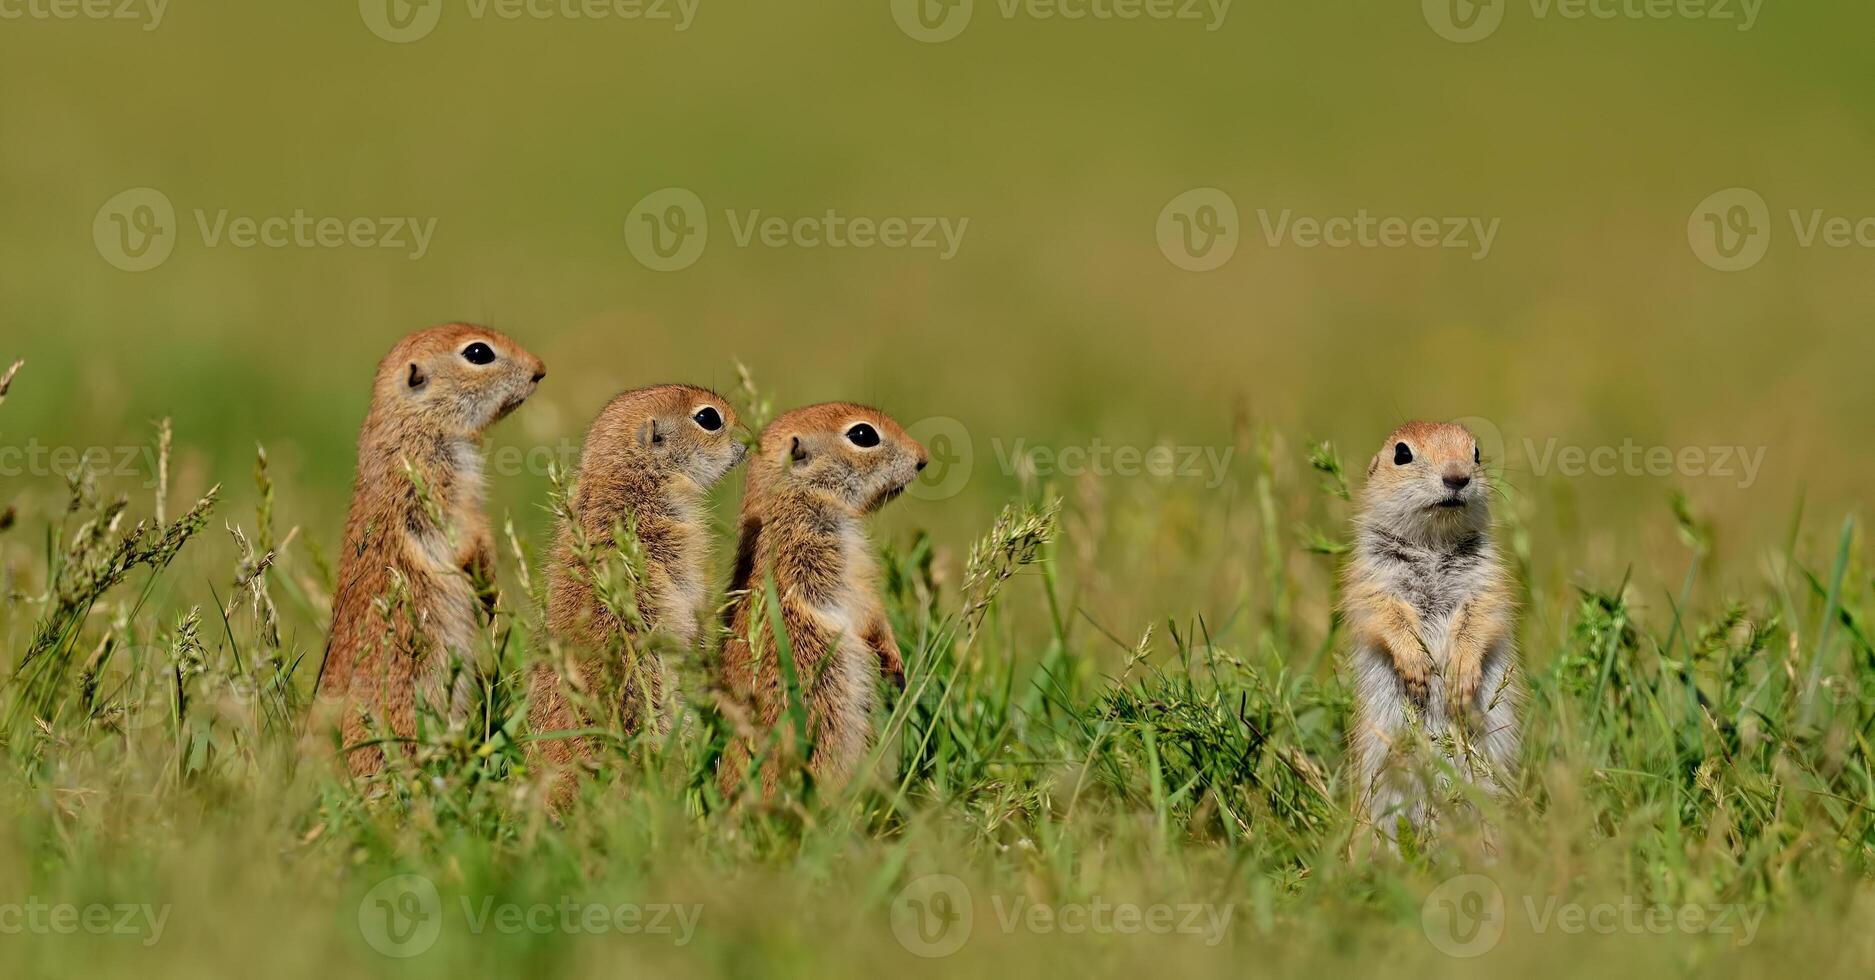 grond eekhoorns staand in een veld. foto